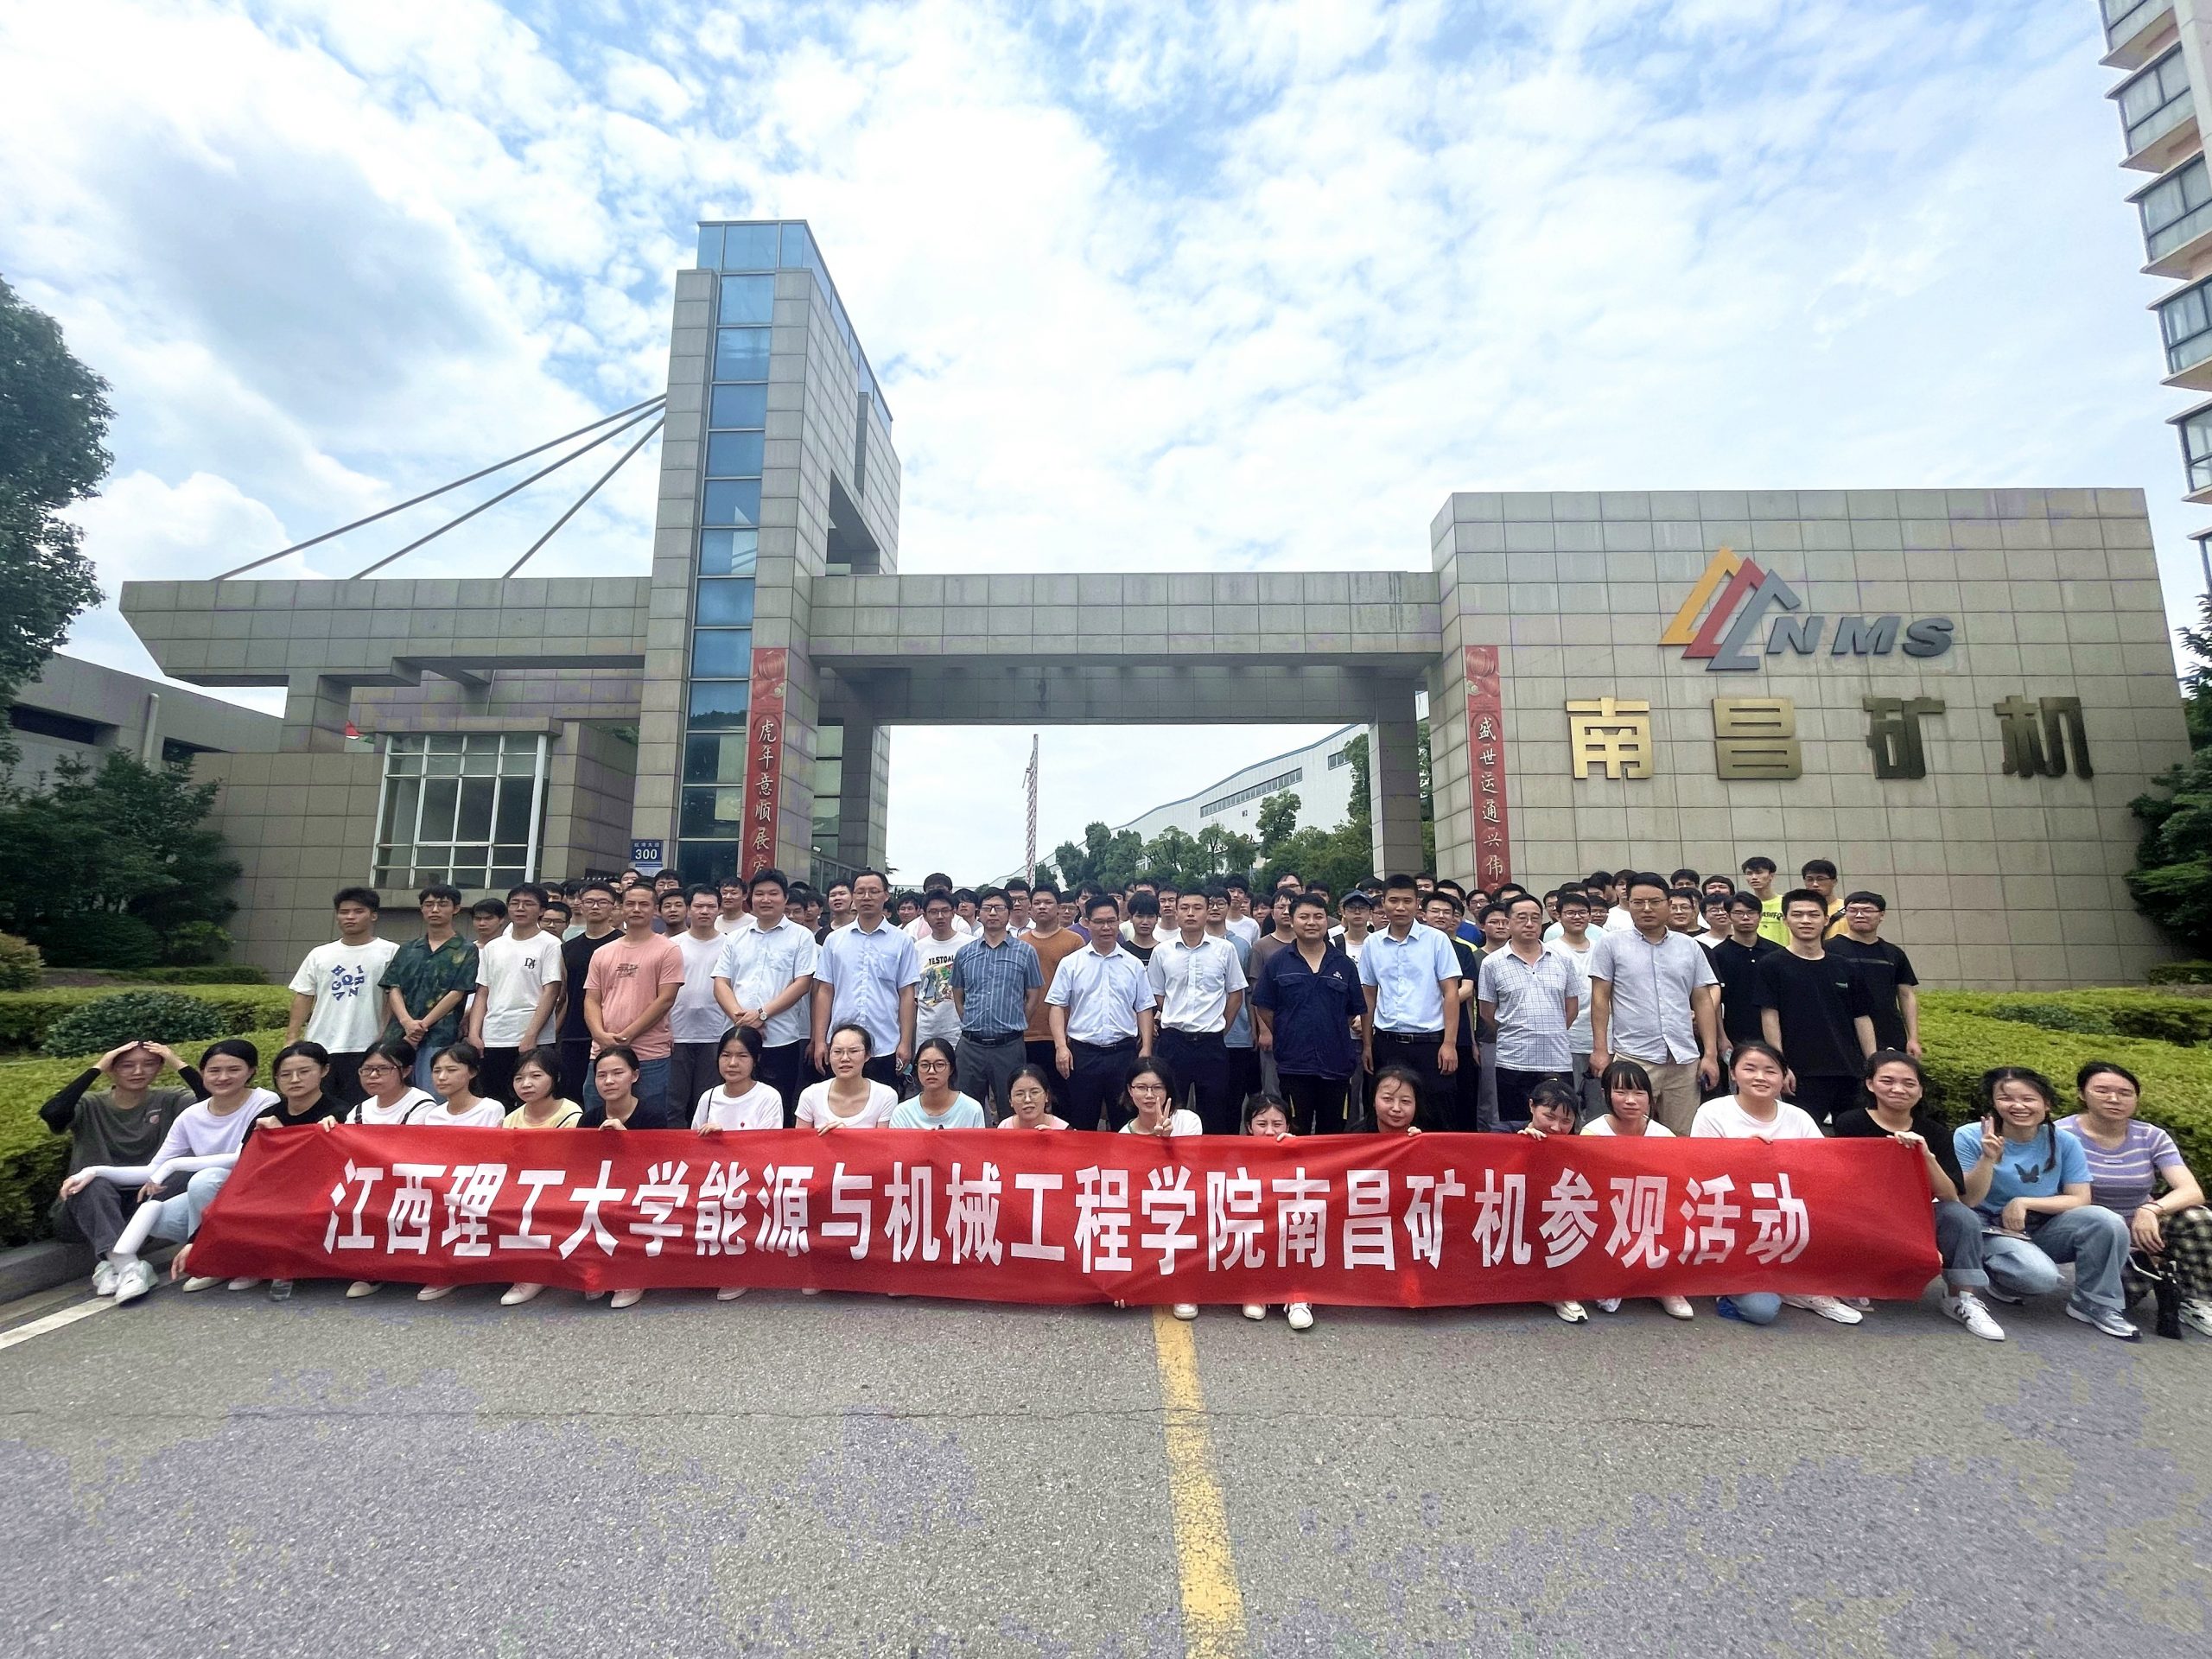 Visitar a la empresa para conocer el empleo de cerca: más de 200 estudiantes de la Universidad de Ciencia y Tecnología de Jiangxi visitaron NMS